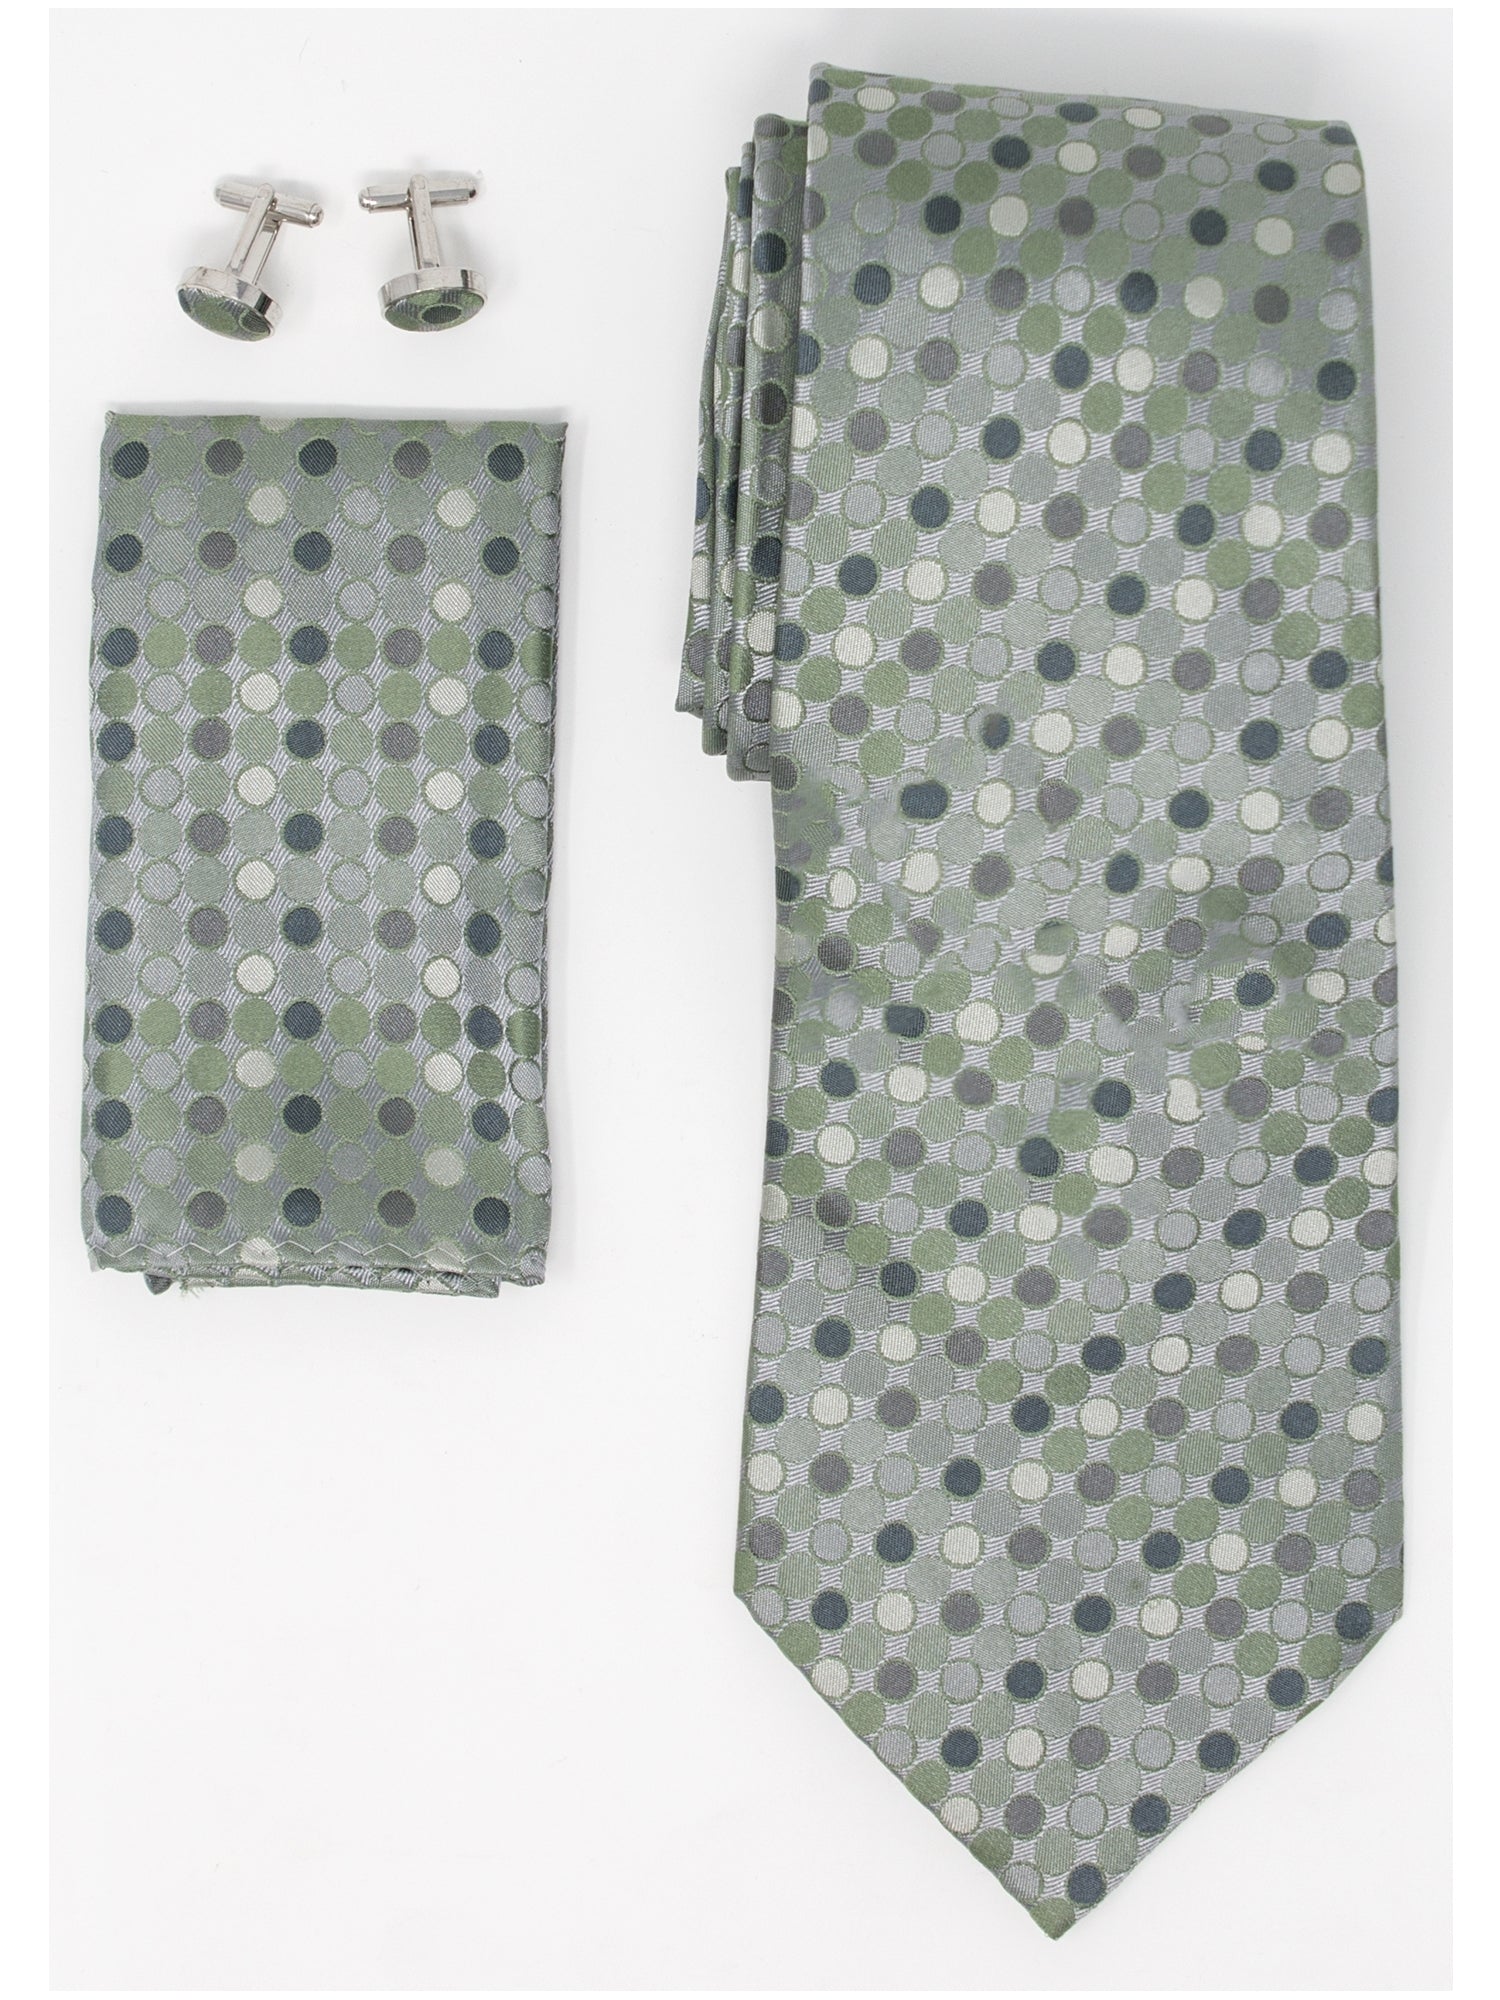 Men's Silk Neck Tie Set Cufflinks & Hanky Collection Neck Tie TheDapperTie Green And Grey Polka Dots Regular 